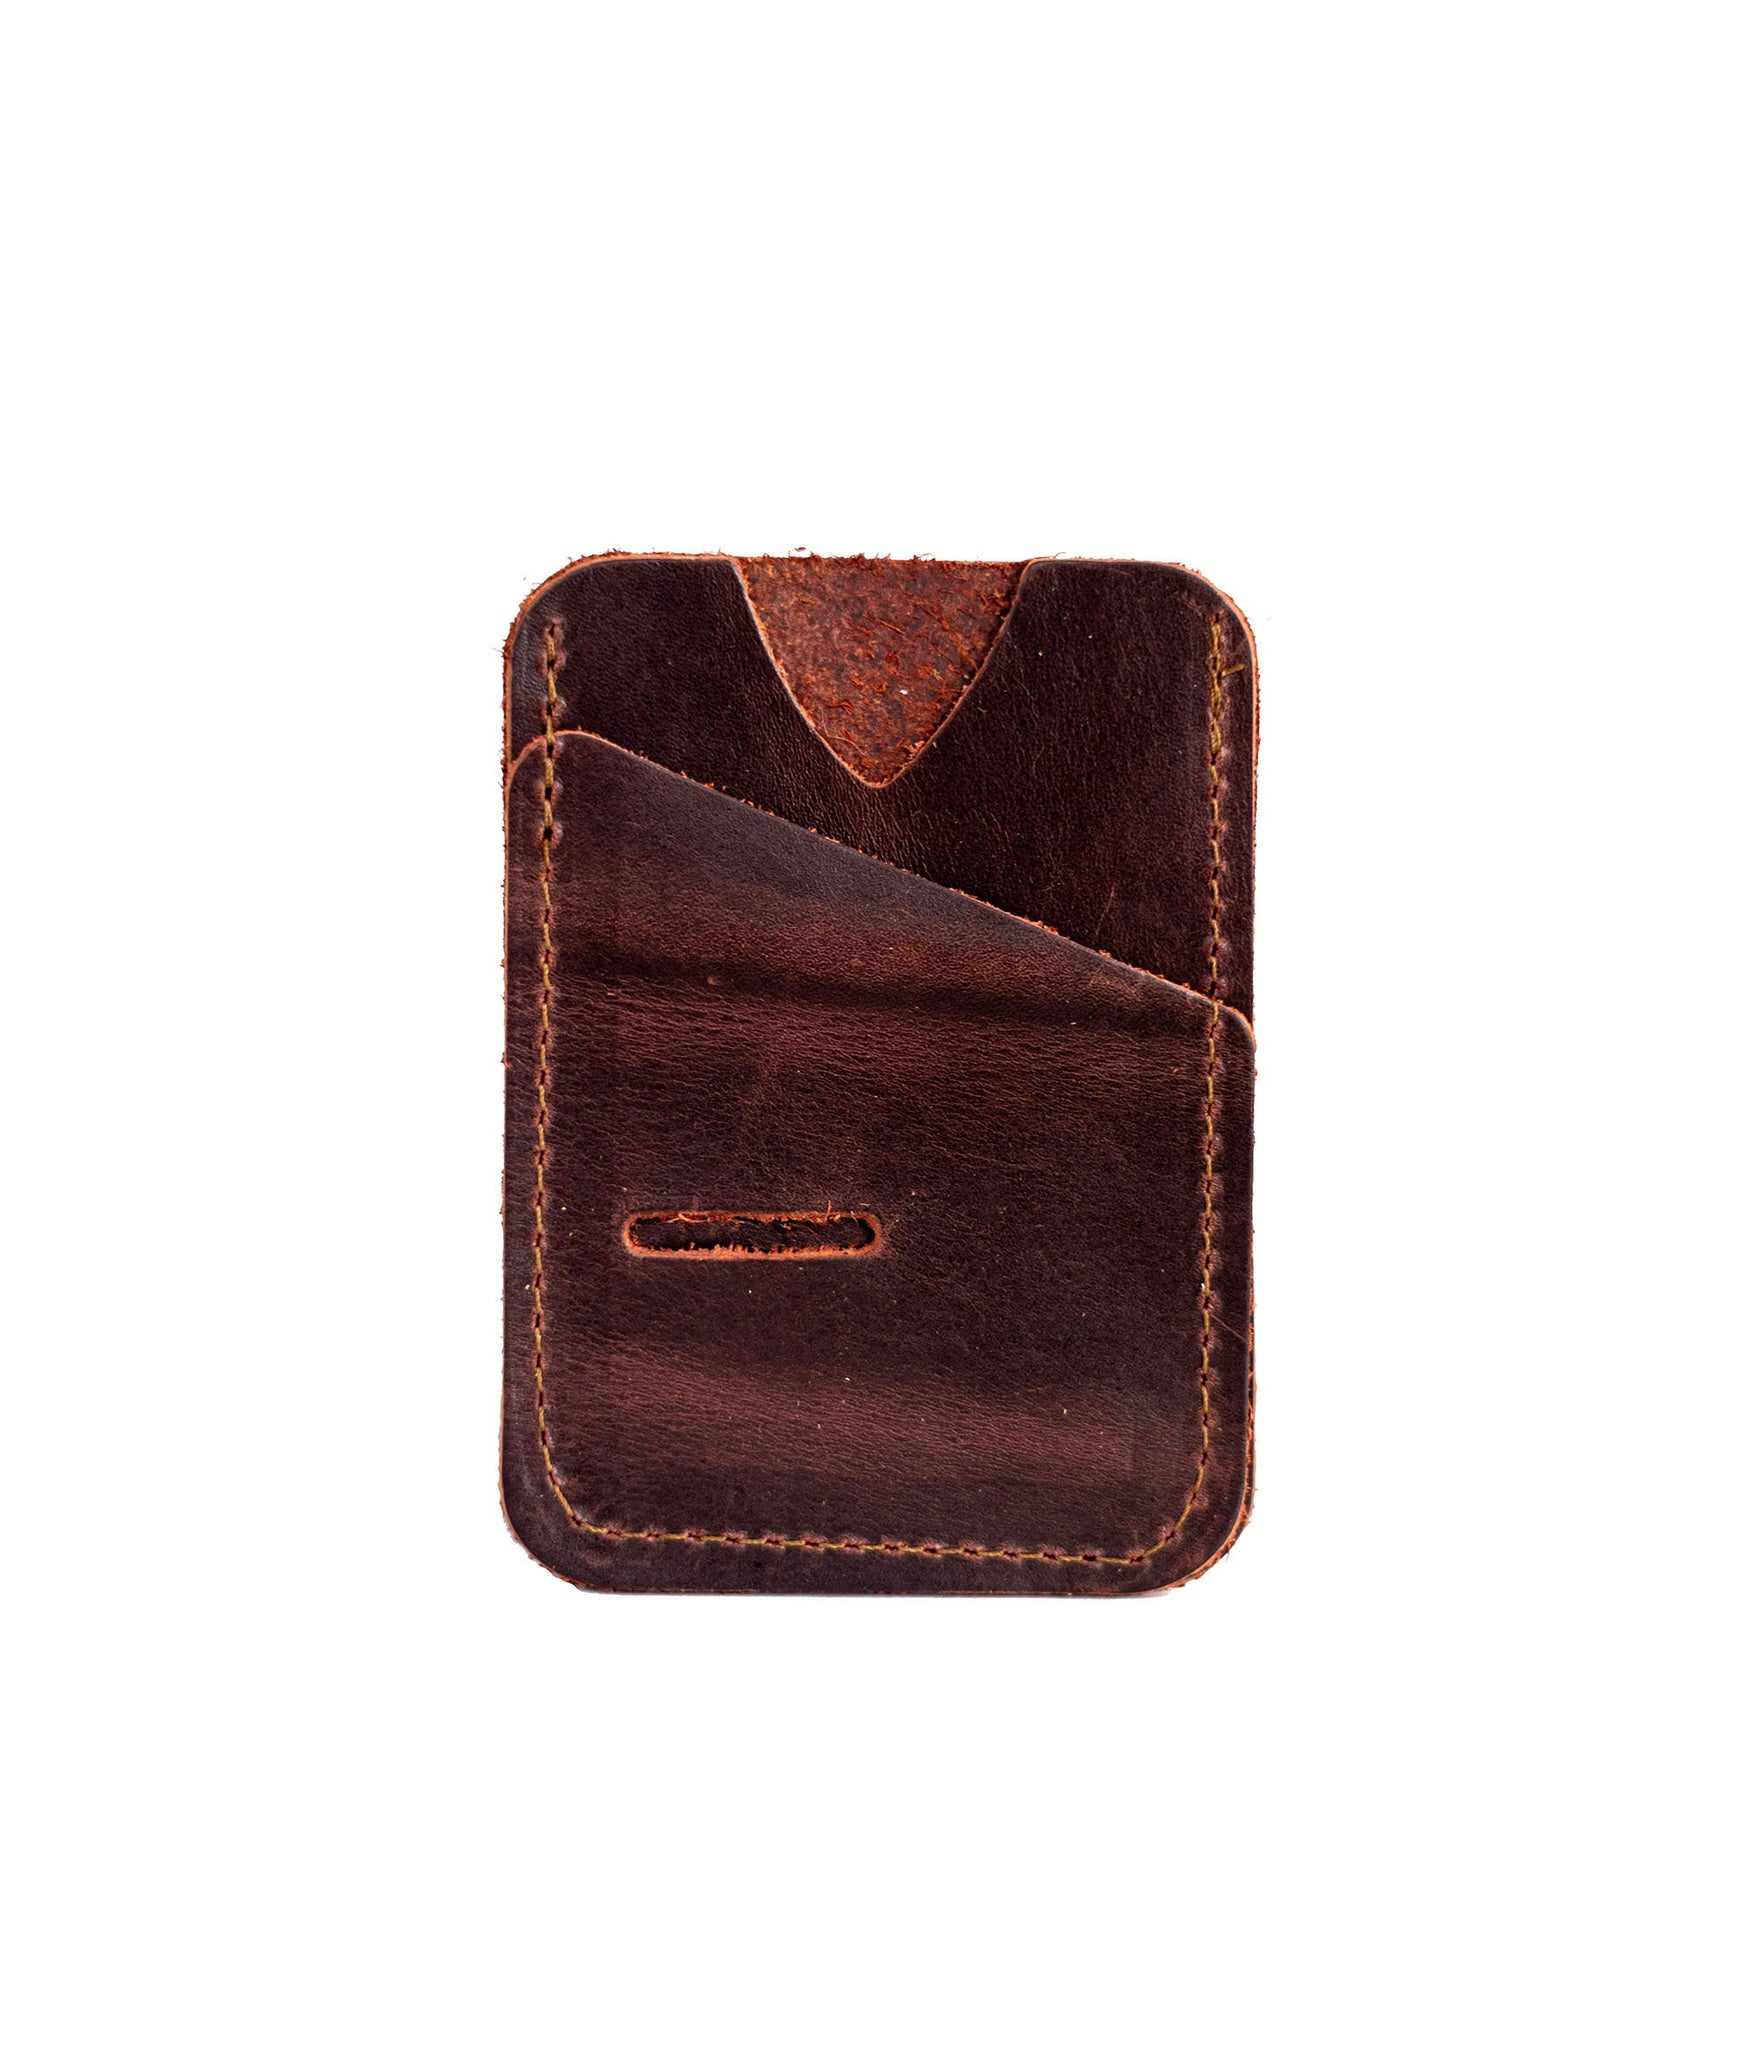 Leather Card Wallet | Card Holder | Slim Wallet